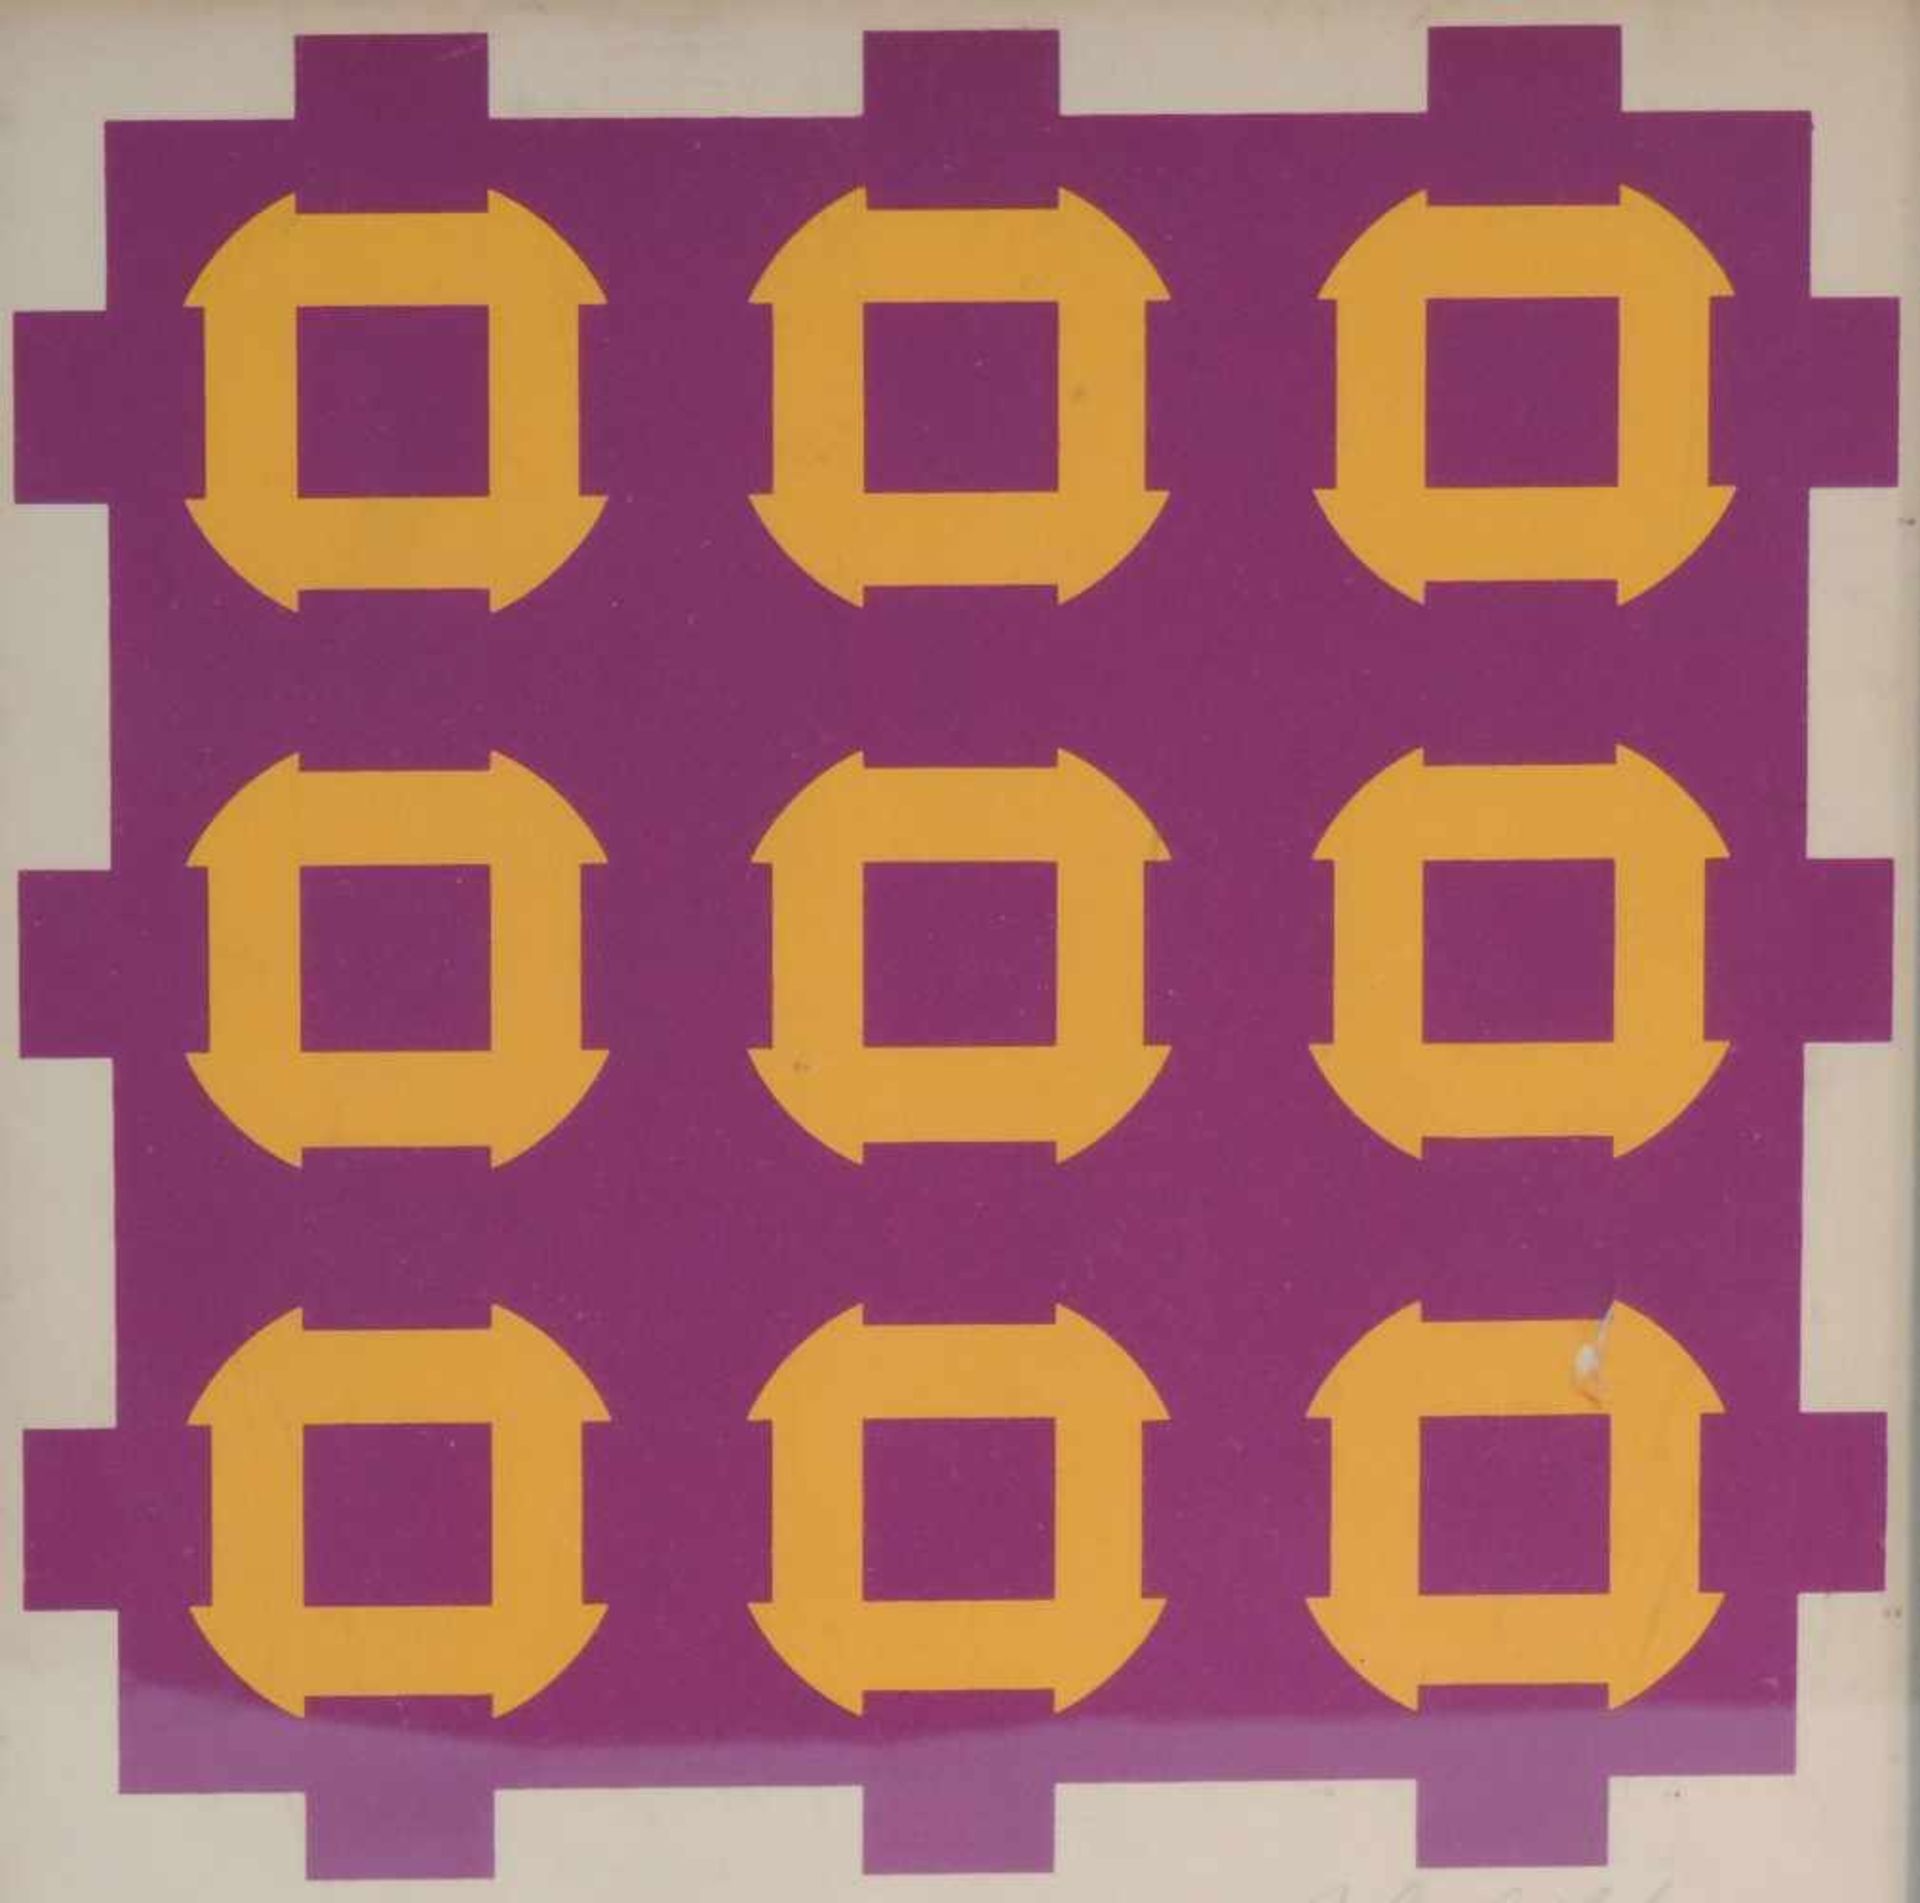 KONSTRUKTIVIST, Siebdruck, geometrische Komposition in violet u gelb, unlerserlich sign, 18 x 18,